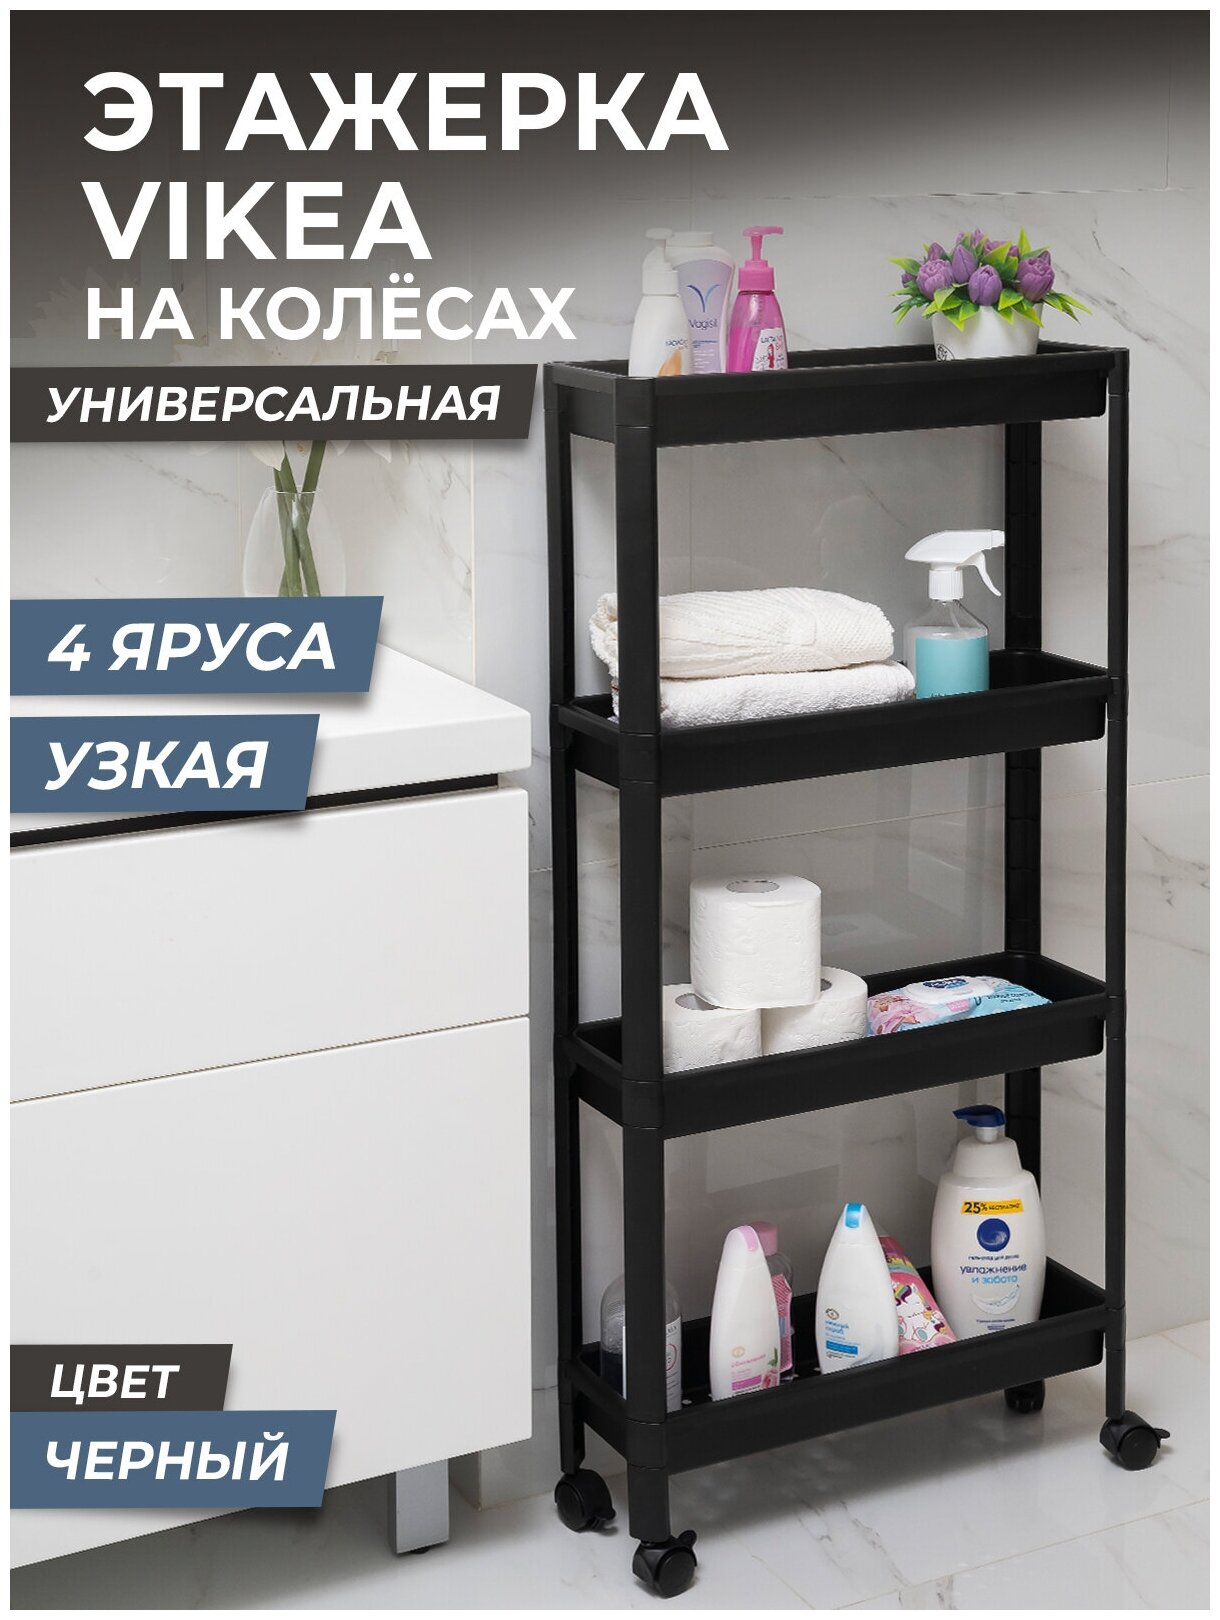 Этажерка для хранения вещей 4х ярусная VIKEA узкая на колесах, цвет черный / Стеллаж напольный для кухни